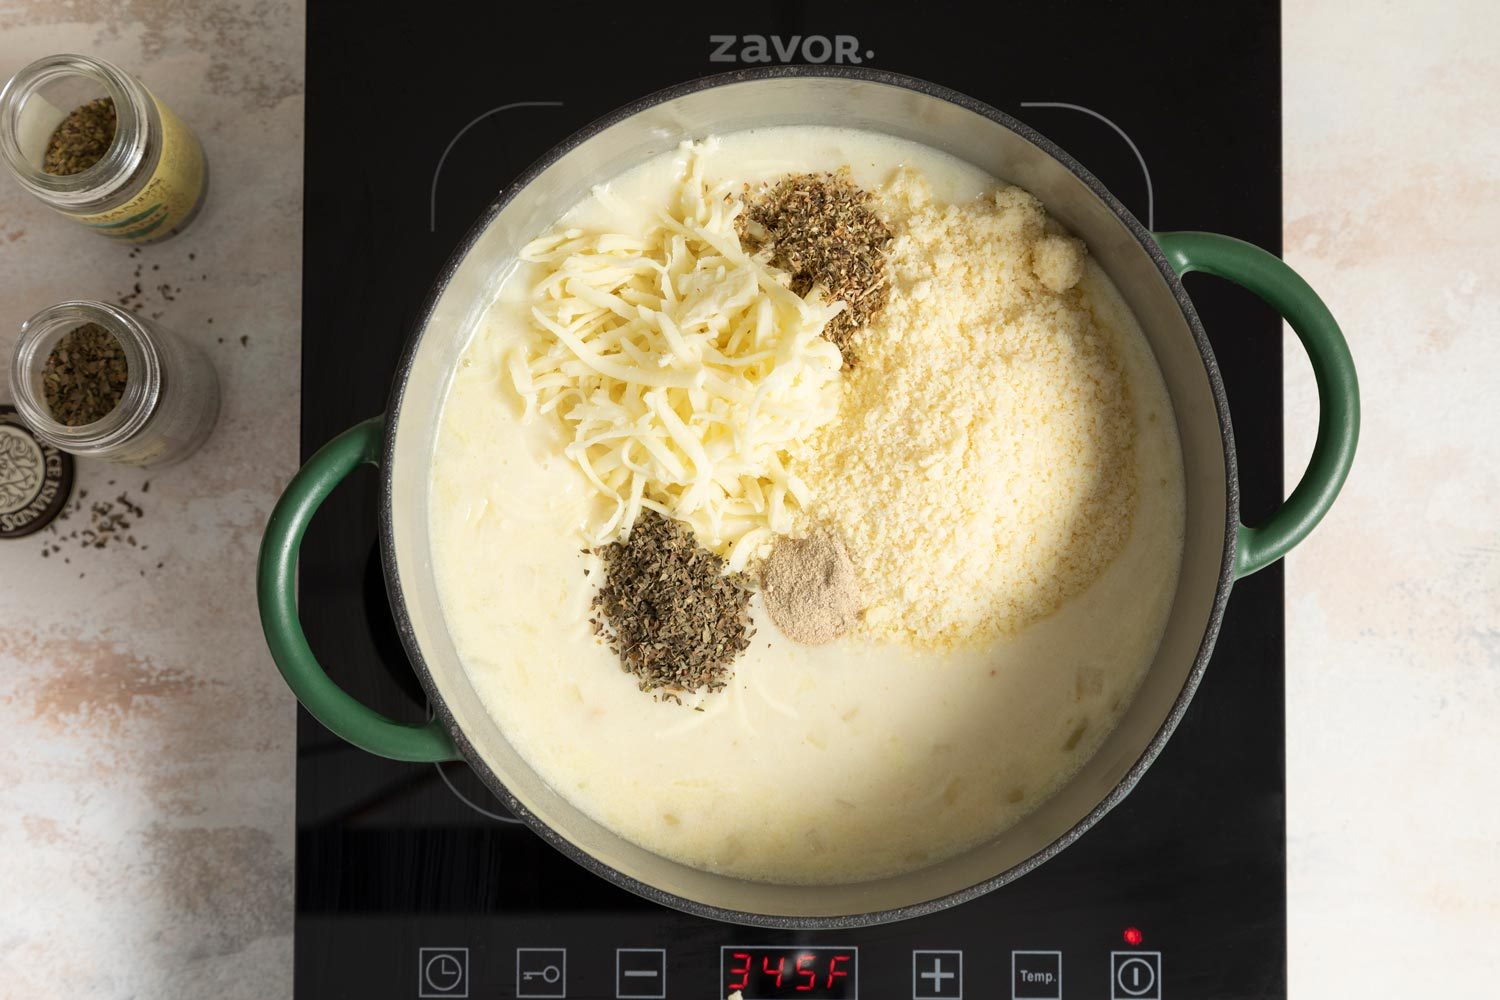 Stir In Mozzarella For Chicken Cheese Lasagna Ft23 152 St 1017 2 Tmb Studio